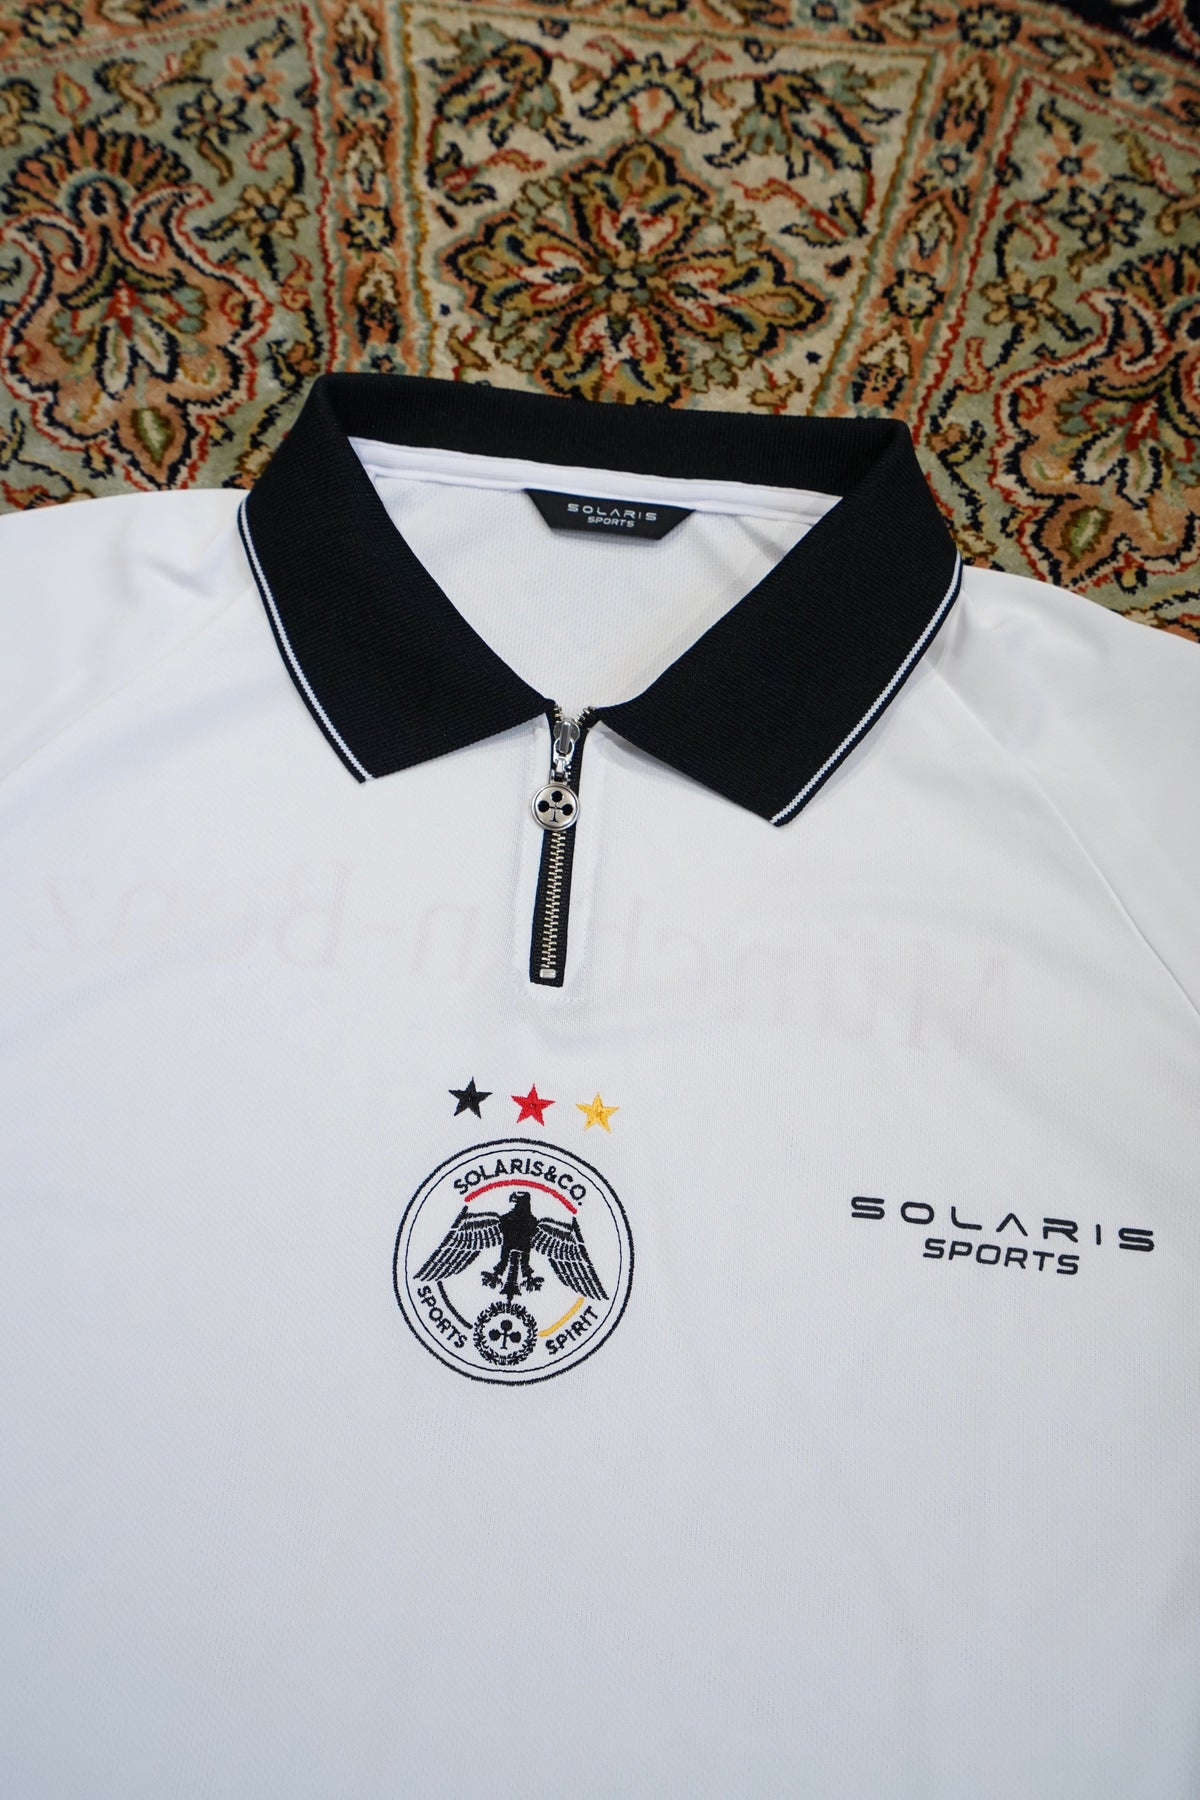 Tシャツ SOLARIS SPORTS S L WHITE FOOTBALL SHIRT 超人気 専門店